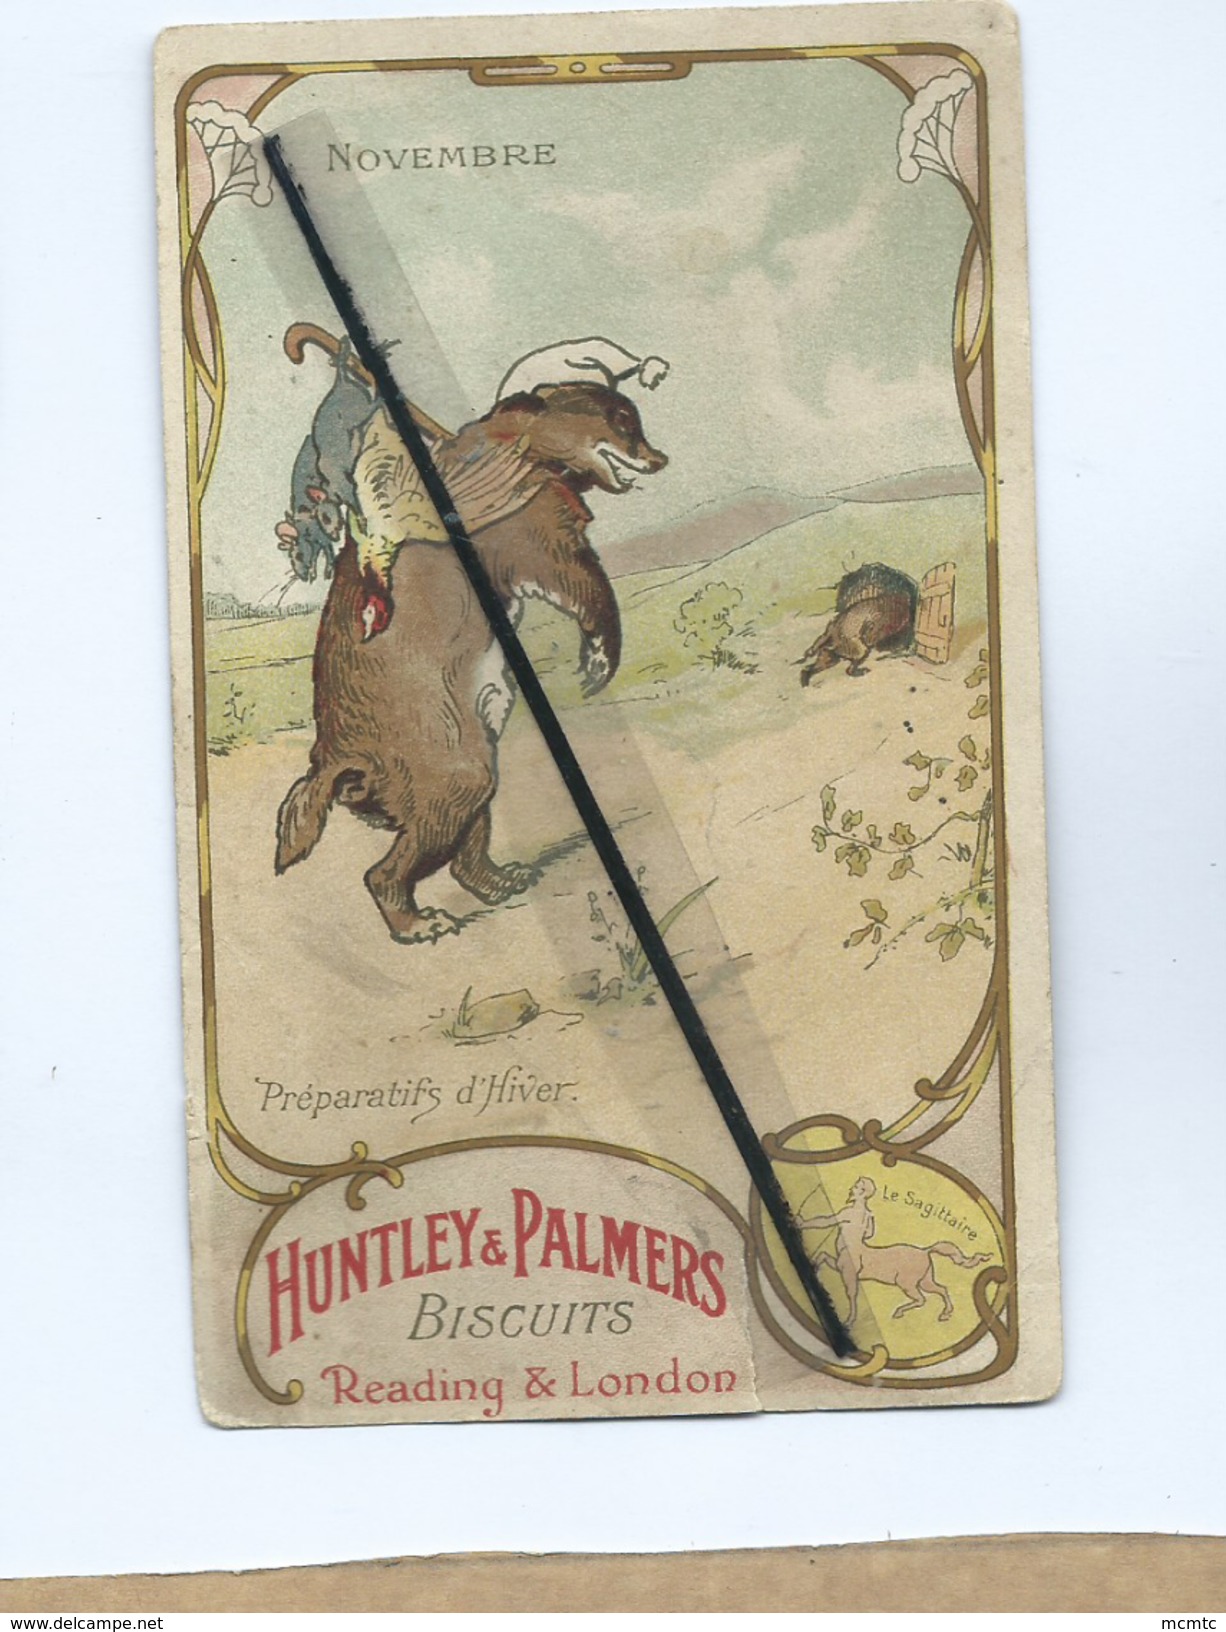 Image -  La Gaufrette Vanille 'PALMERS" -   Novenmbre -  Le Sagittaire-  Hundley & Palmers- Biscuits -Reading Et London - Publicité